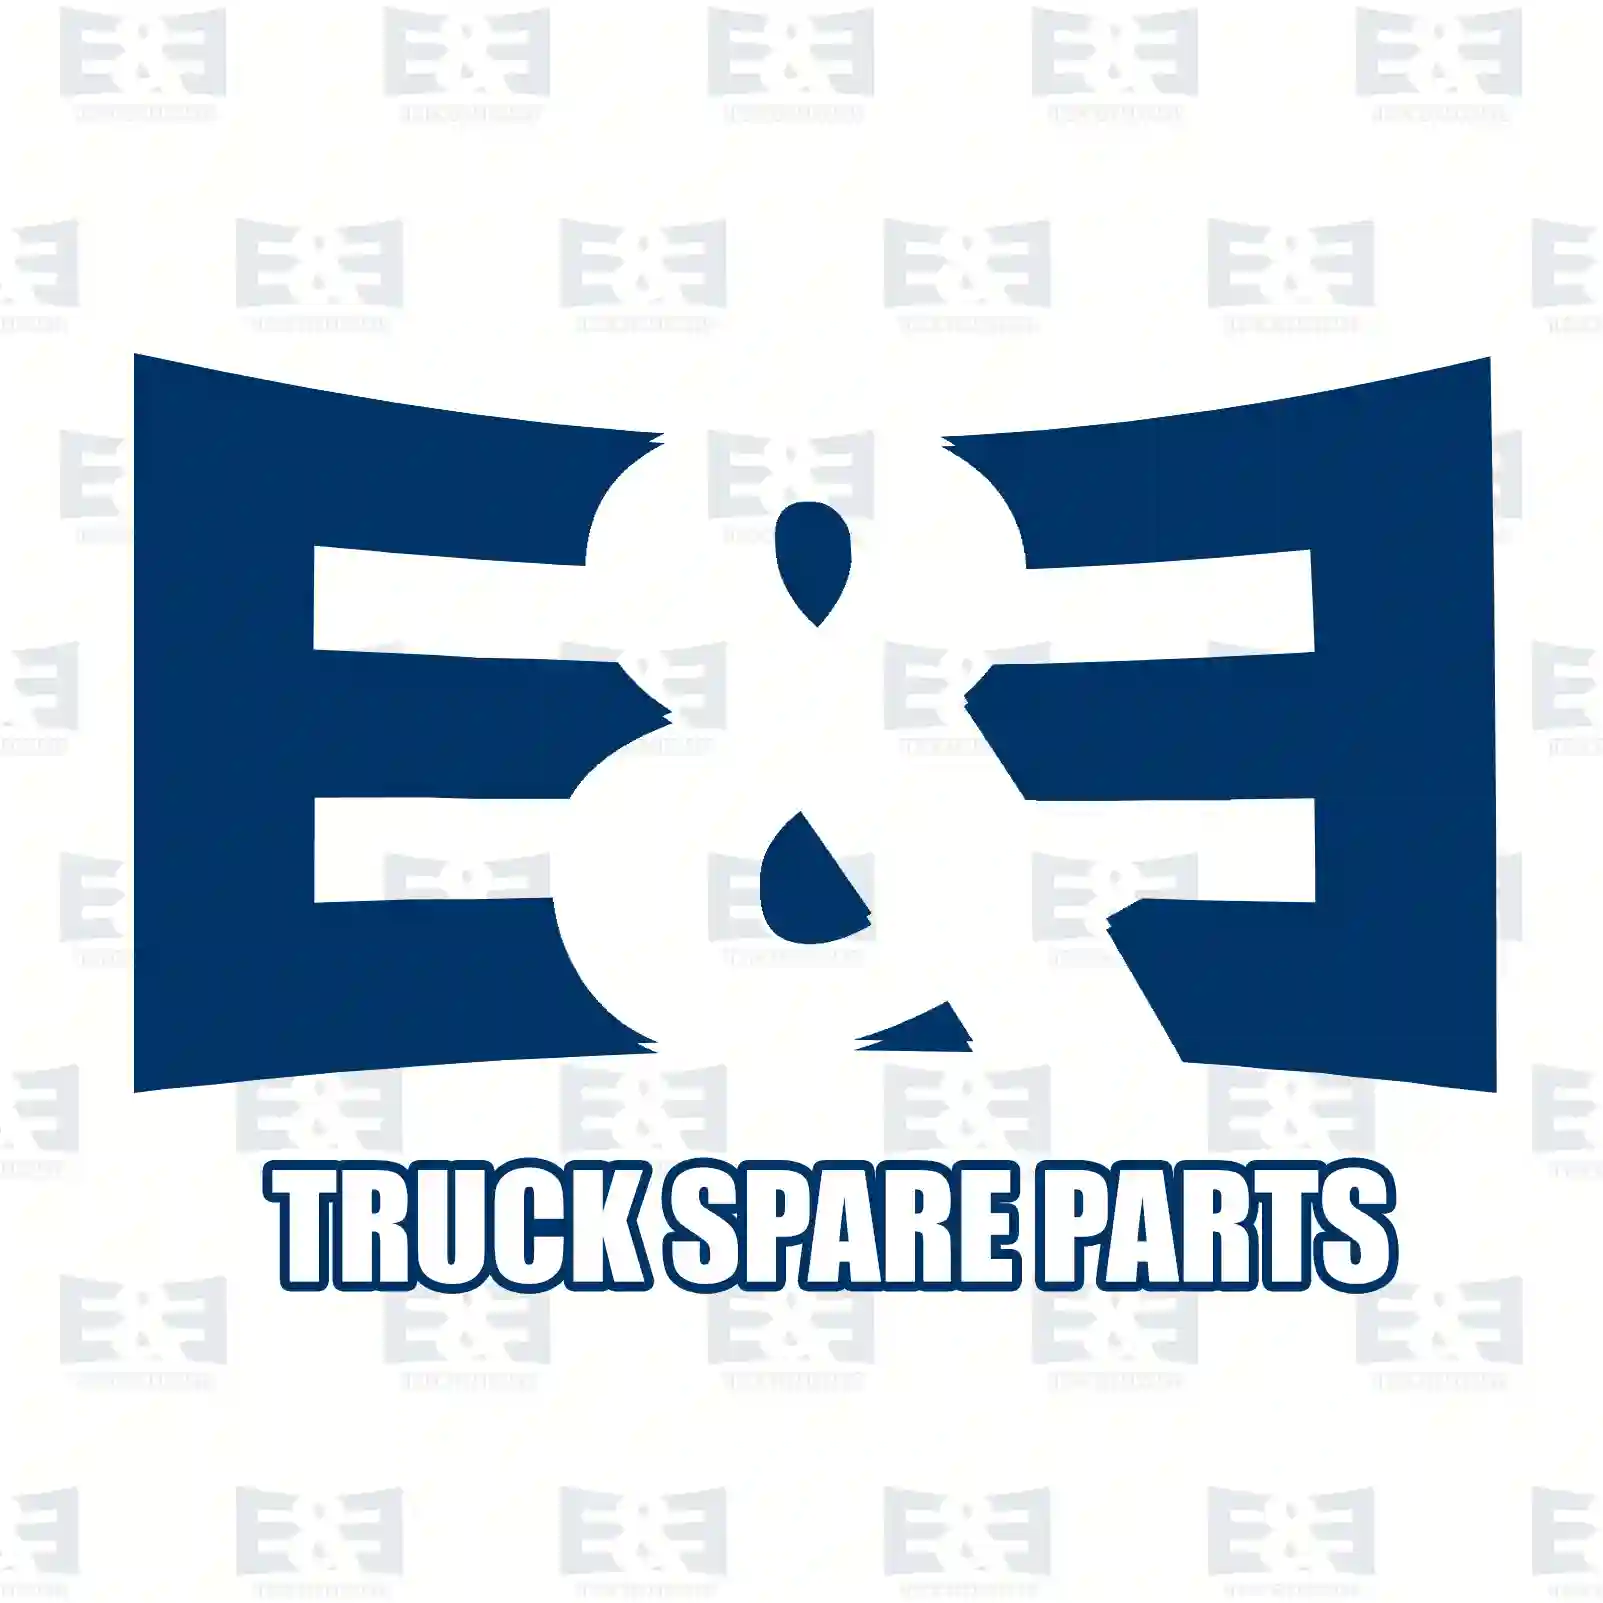 Propeller shaft, 2E2276878, 262946, 262985 ||  2E2276878 E&E Truck Spare Parts | Truck Spare Parts, Auotomotive Spare Parts Propeller shaft, 2E2276878, 262946, 262985 ||  2E2276878 E&E Truck Spare Parts | Truck Spare Parts, Auotomotive Spare Parts